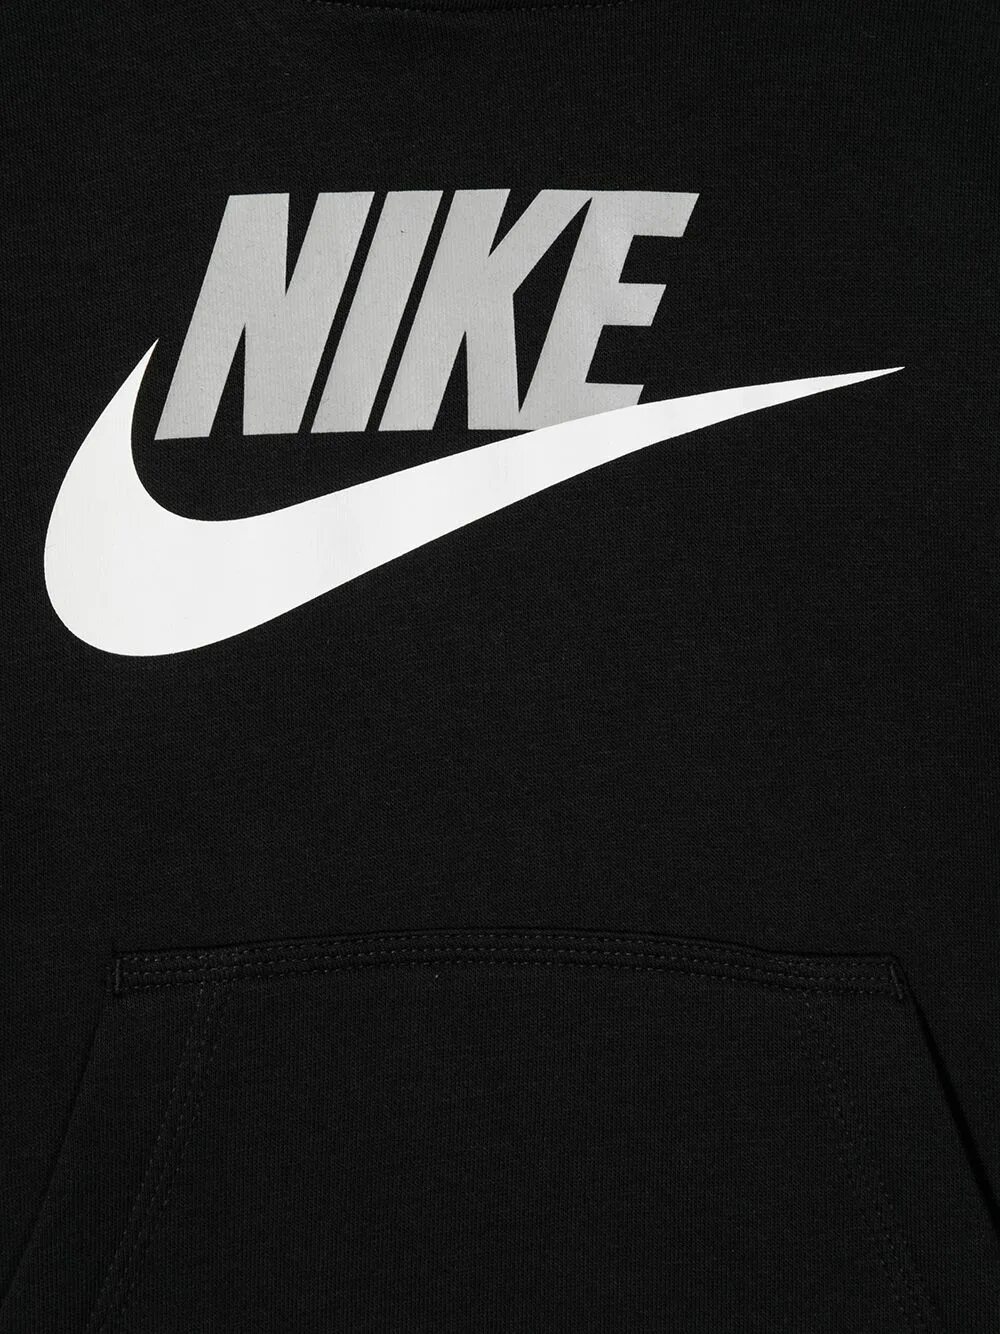 Найк. Nike знак. Бренд найк логотип. Nike логотип на магазине. Найк вк